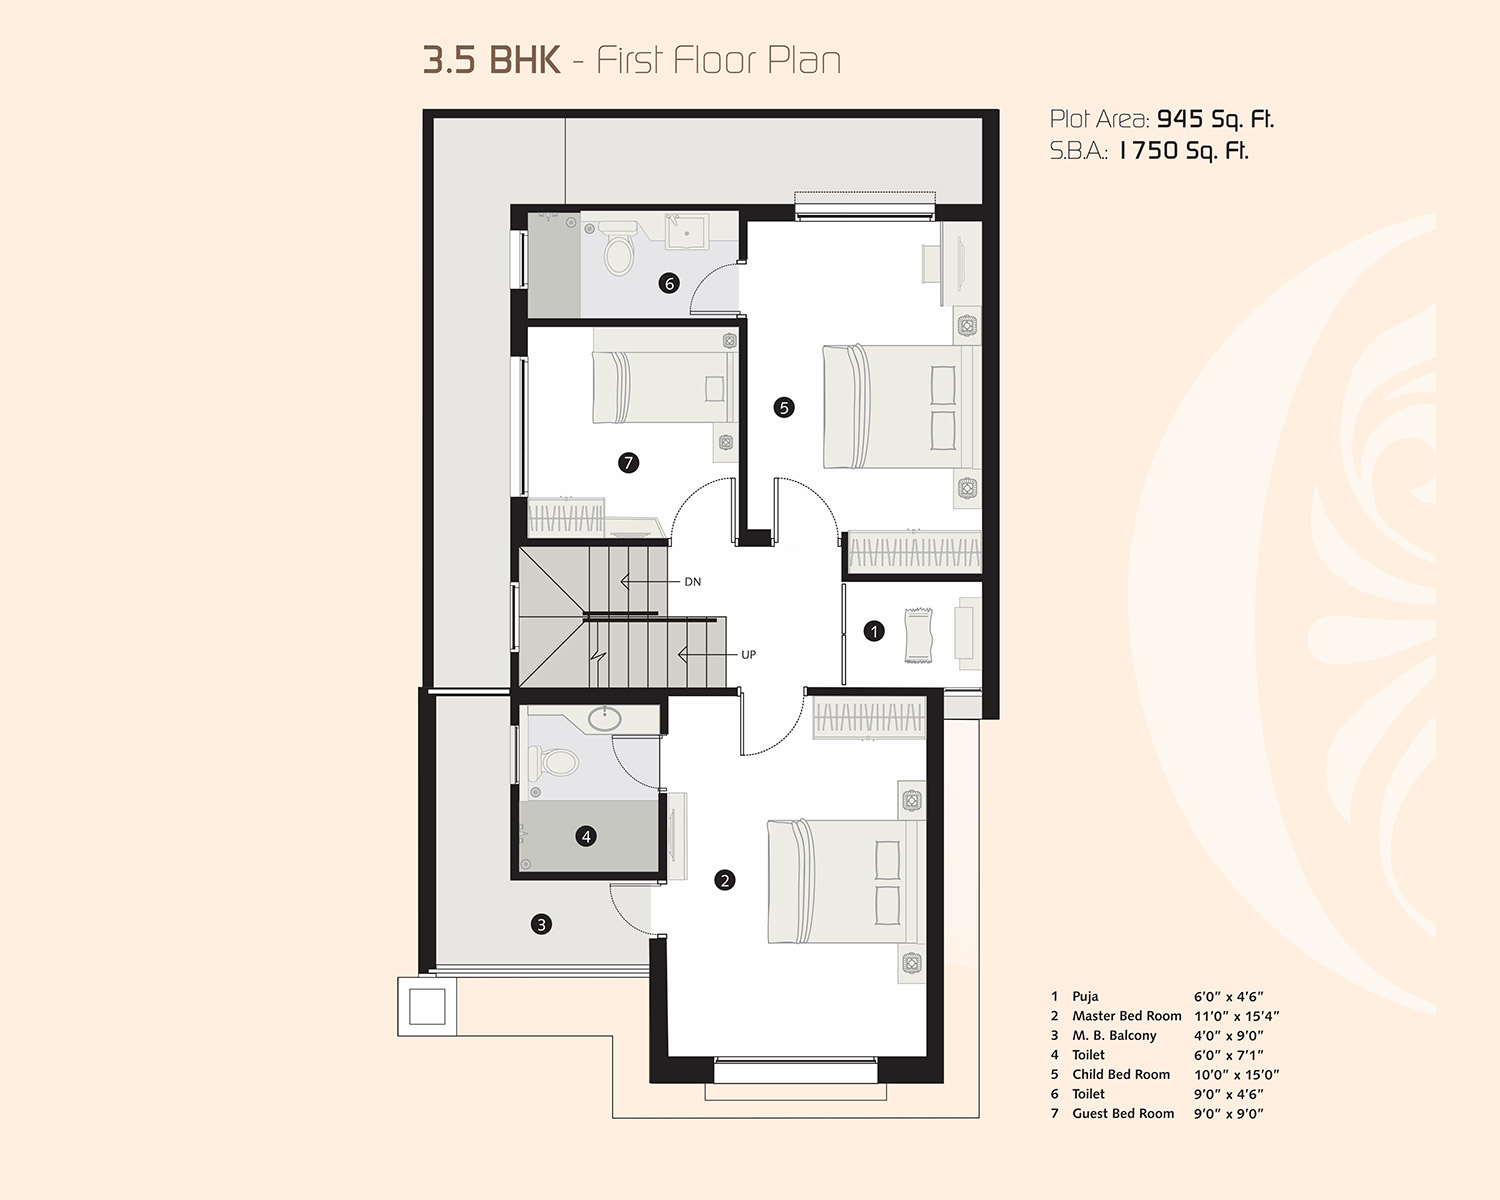 3.5 BHK First Floor Plan